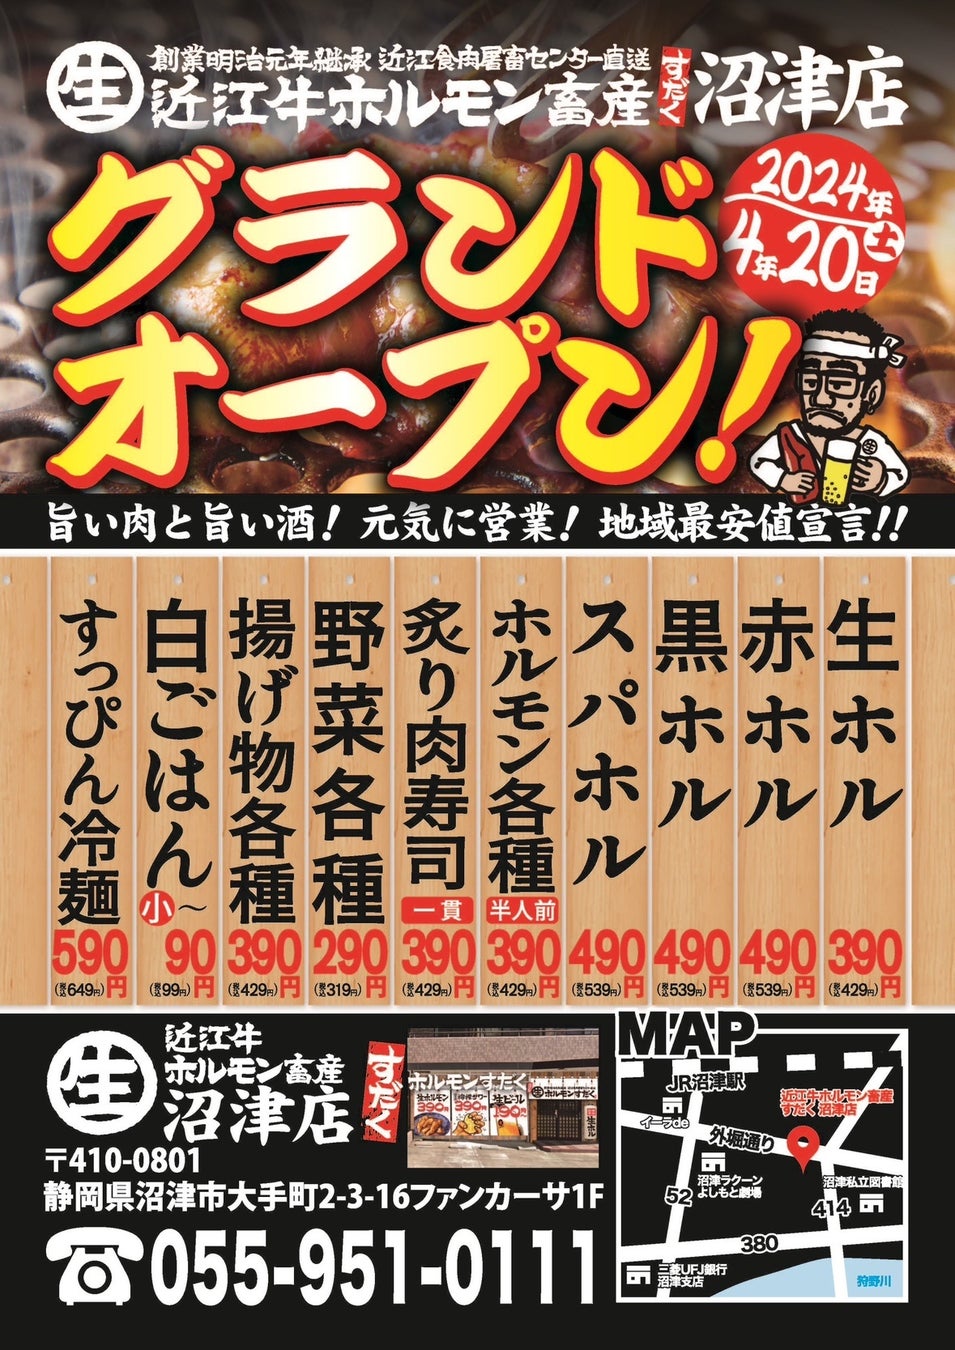 3日で5,600席完売の渋谷マムズタッチ 看板メニュー・サイバーガーの“神コスパ”価格！単品520円、セット850円に決定！